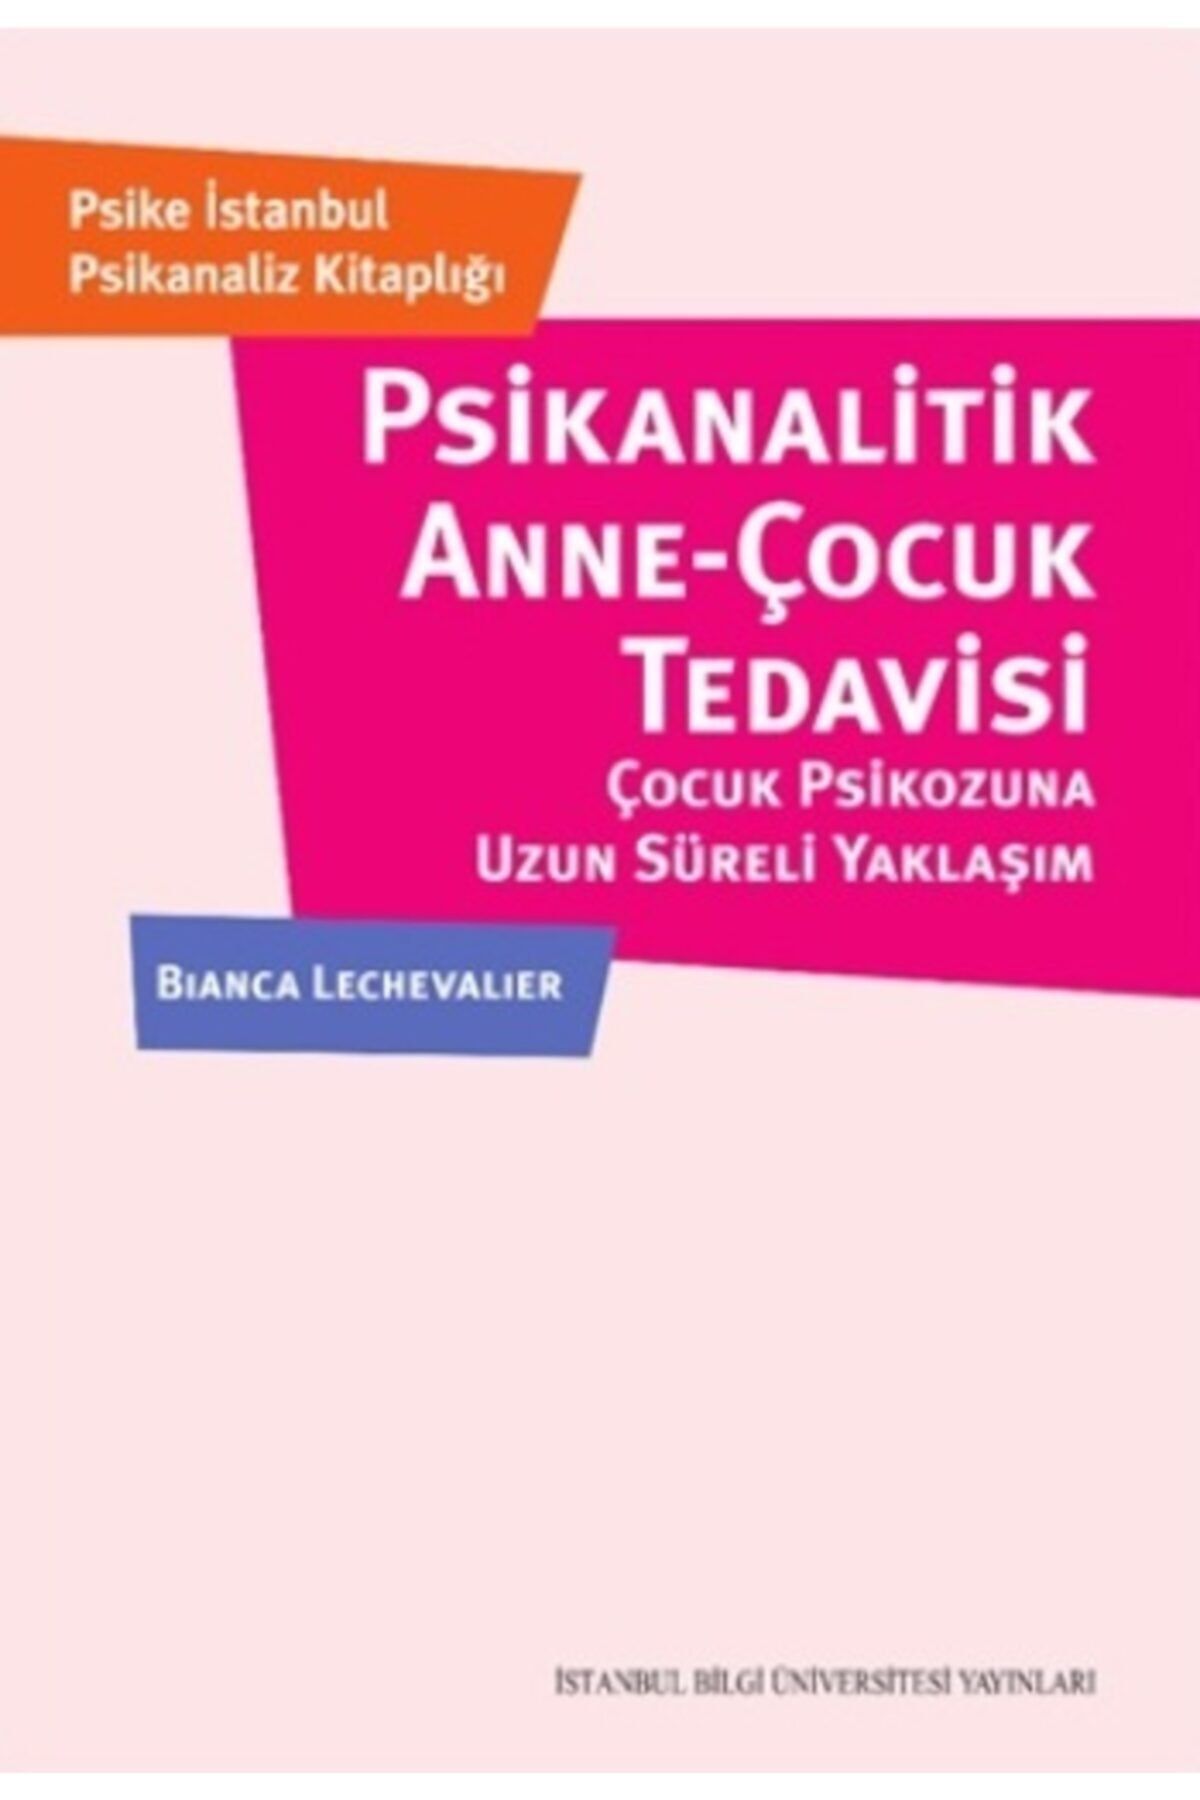 İstanbul Bilgi Üniversitesi Yayınları Psikanalitik Anne - Çocuk Tedavisi - Çocuk Psikozuna Uzun Süerli Yaklaşım